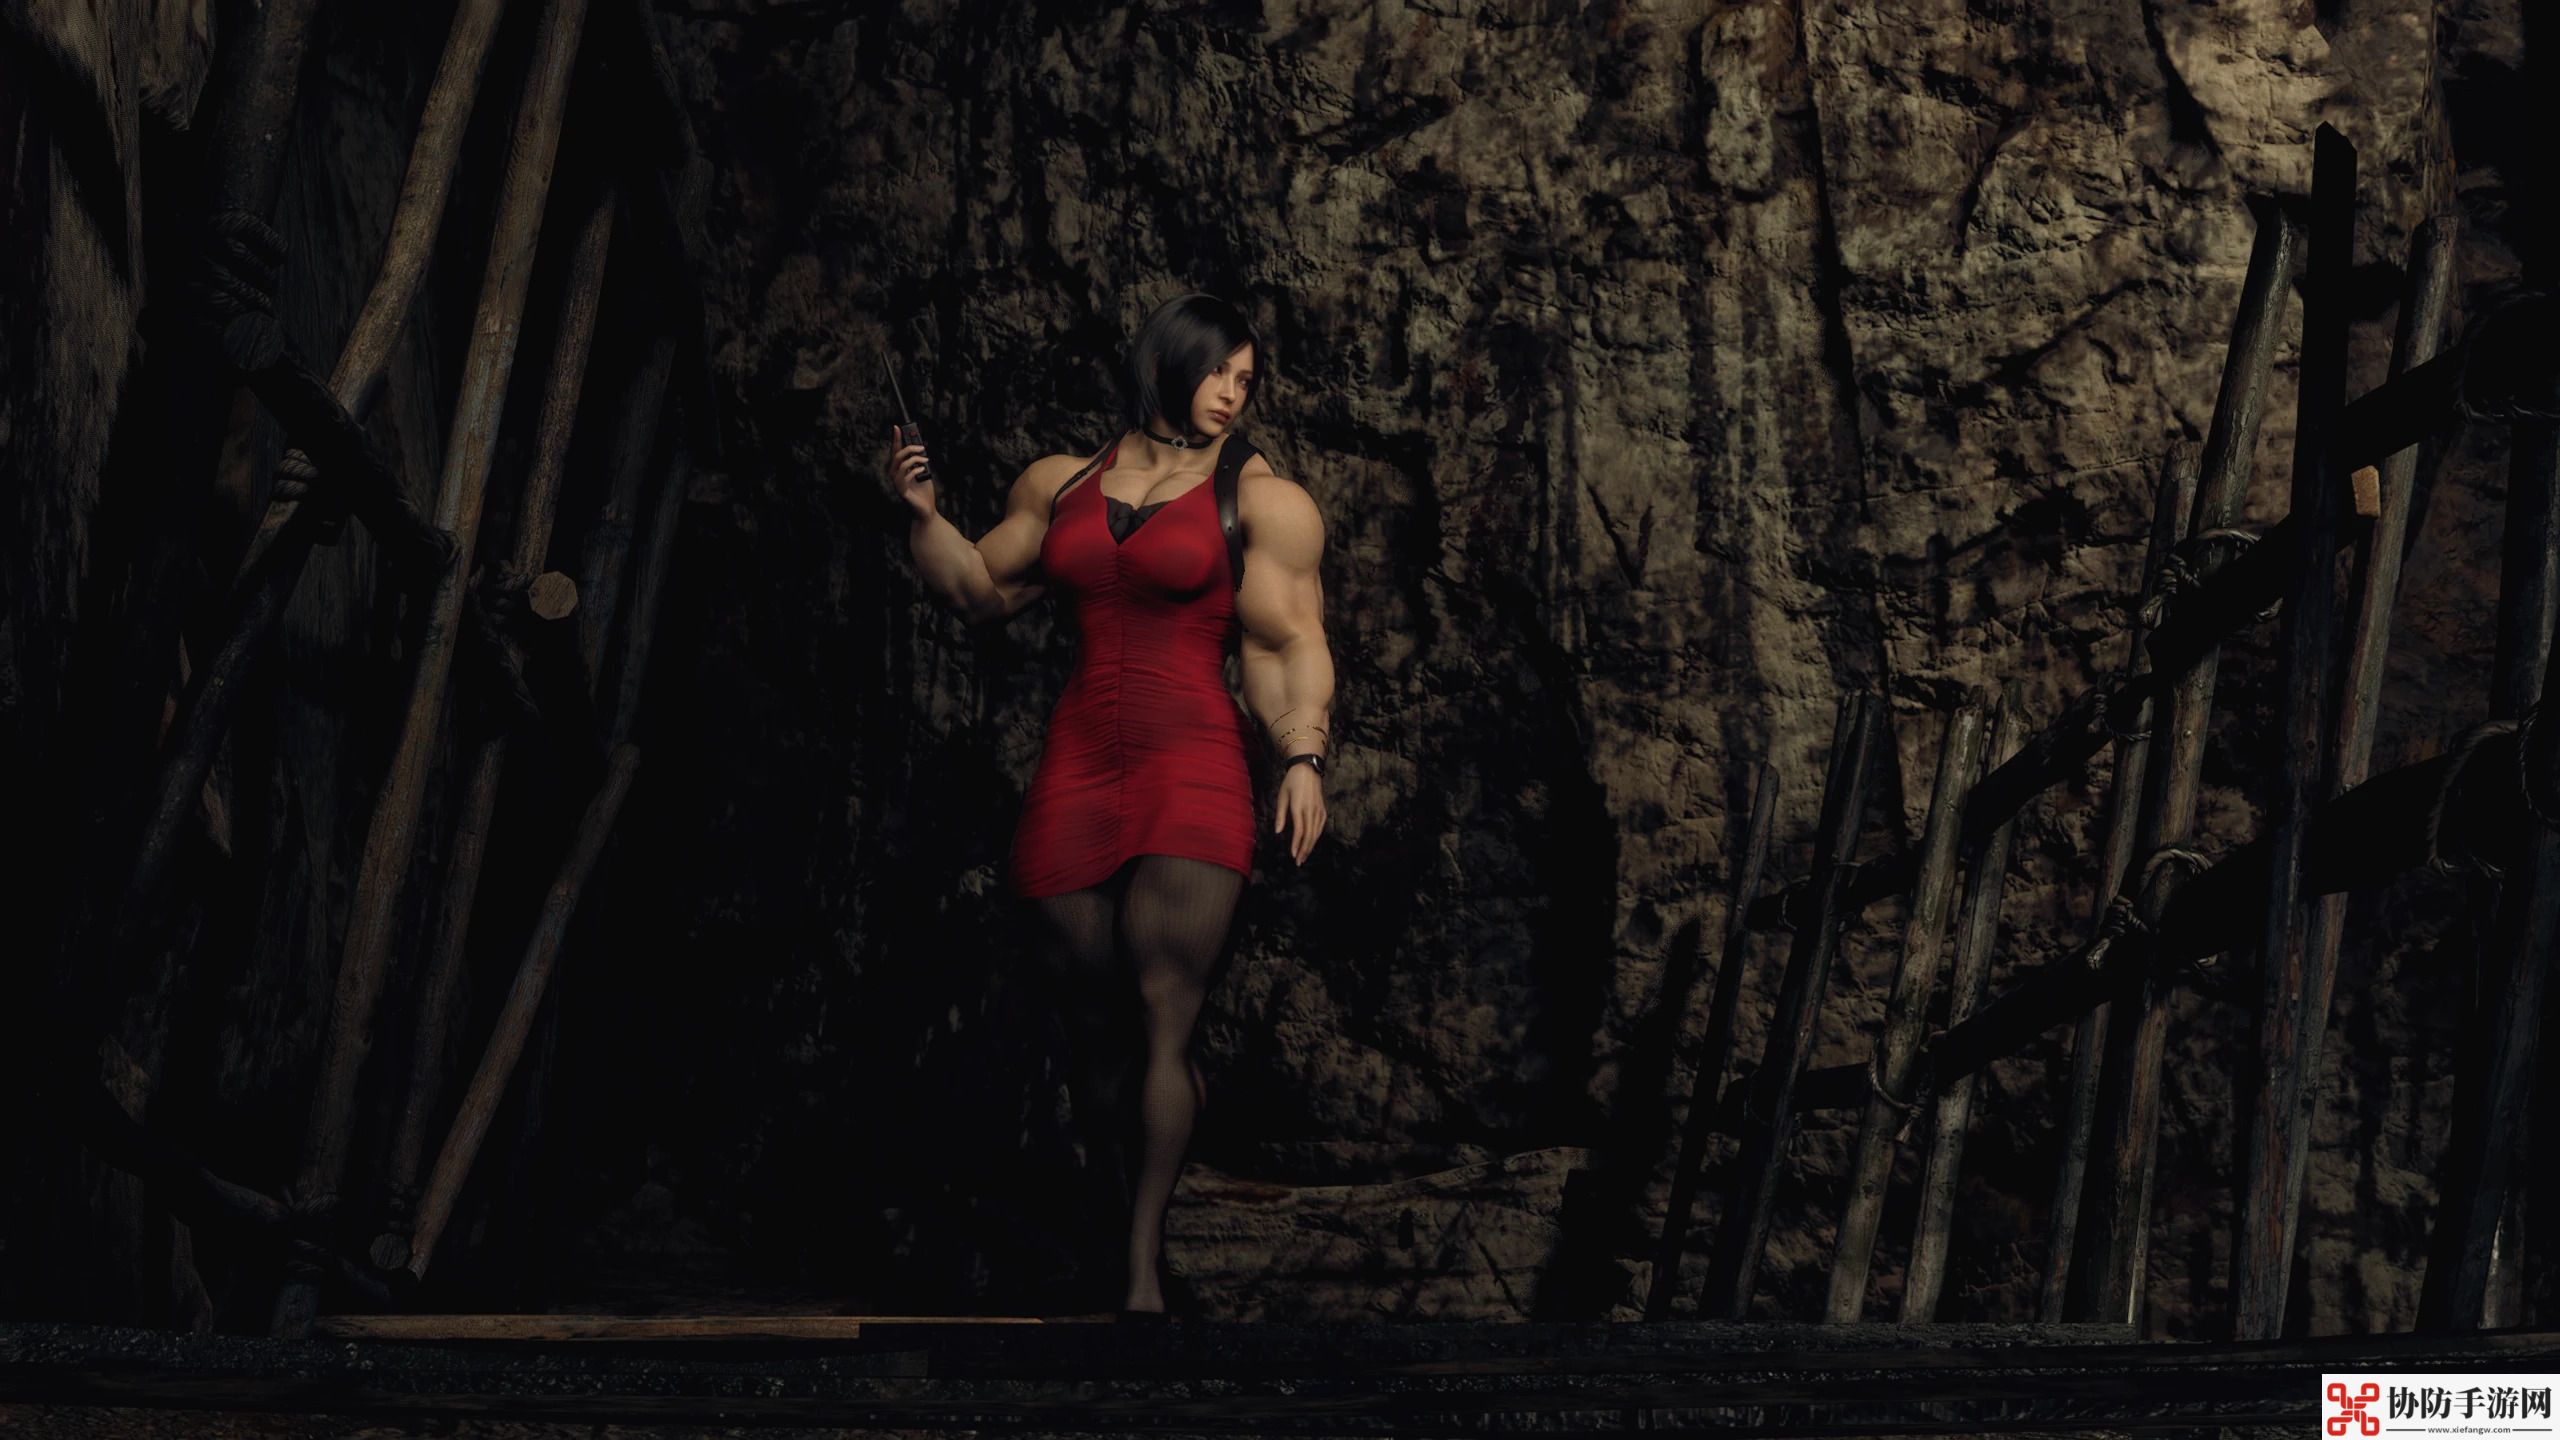 最终幻想7重置版女主肌肉mod推出完整版力量美学